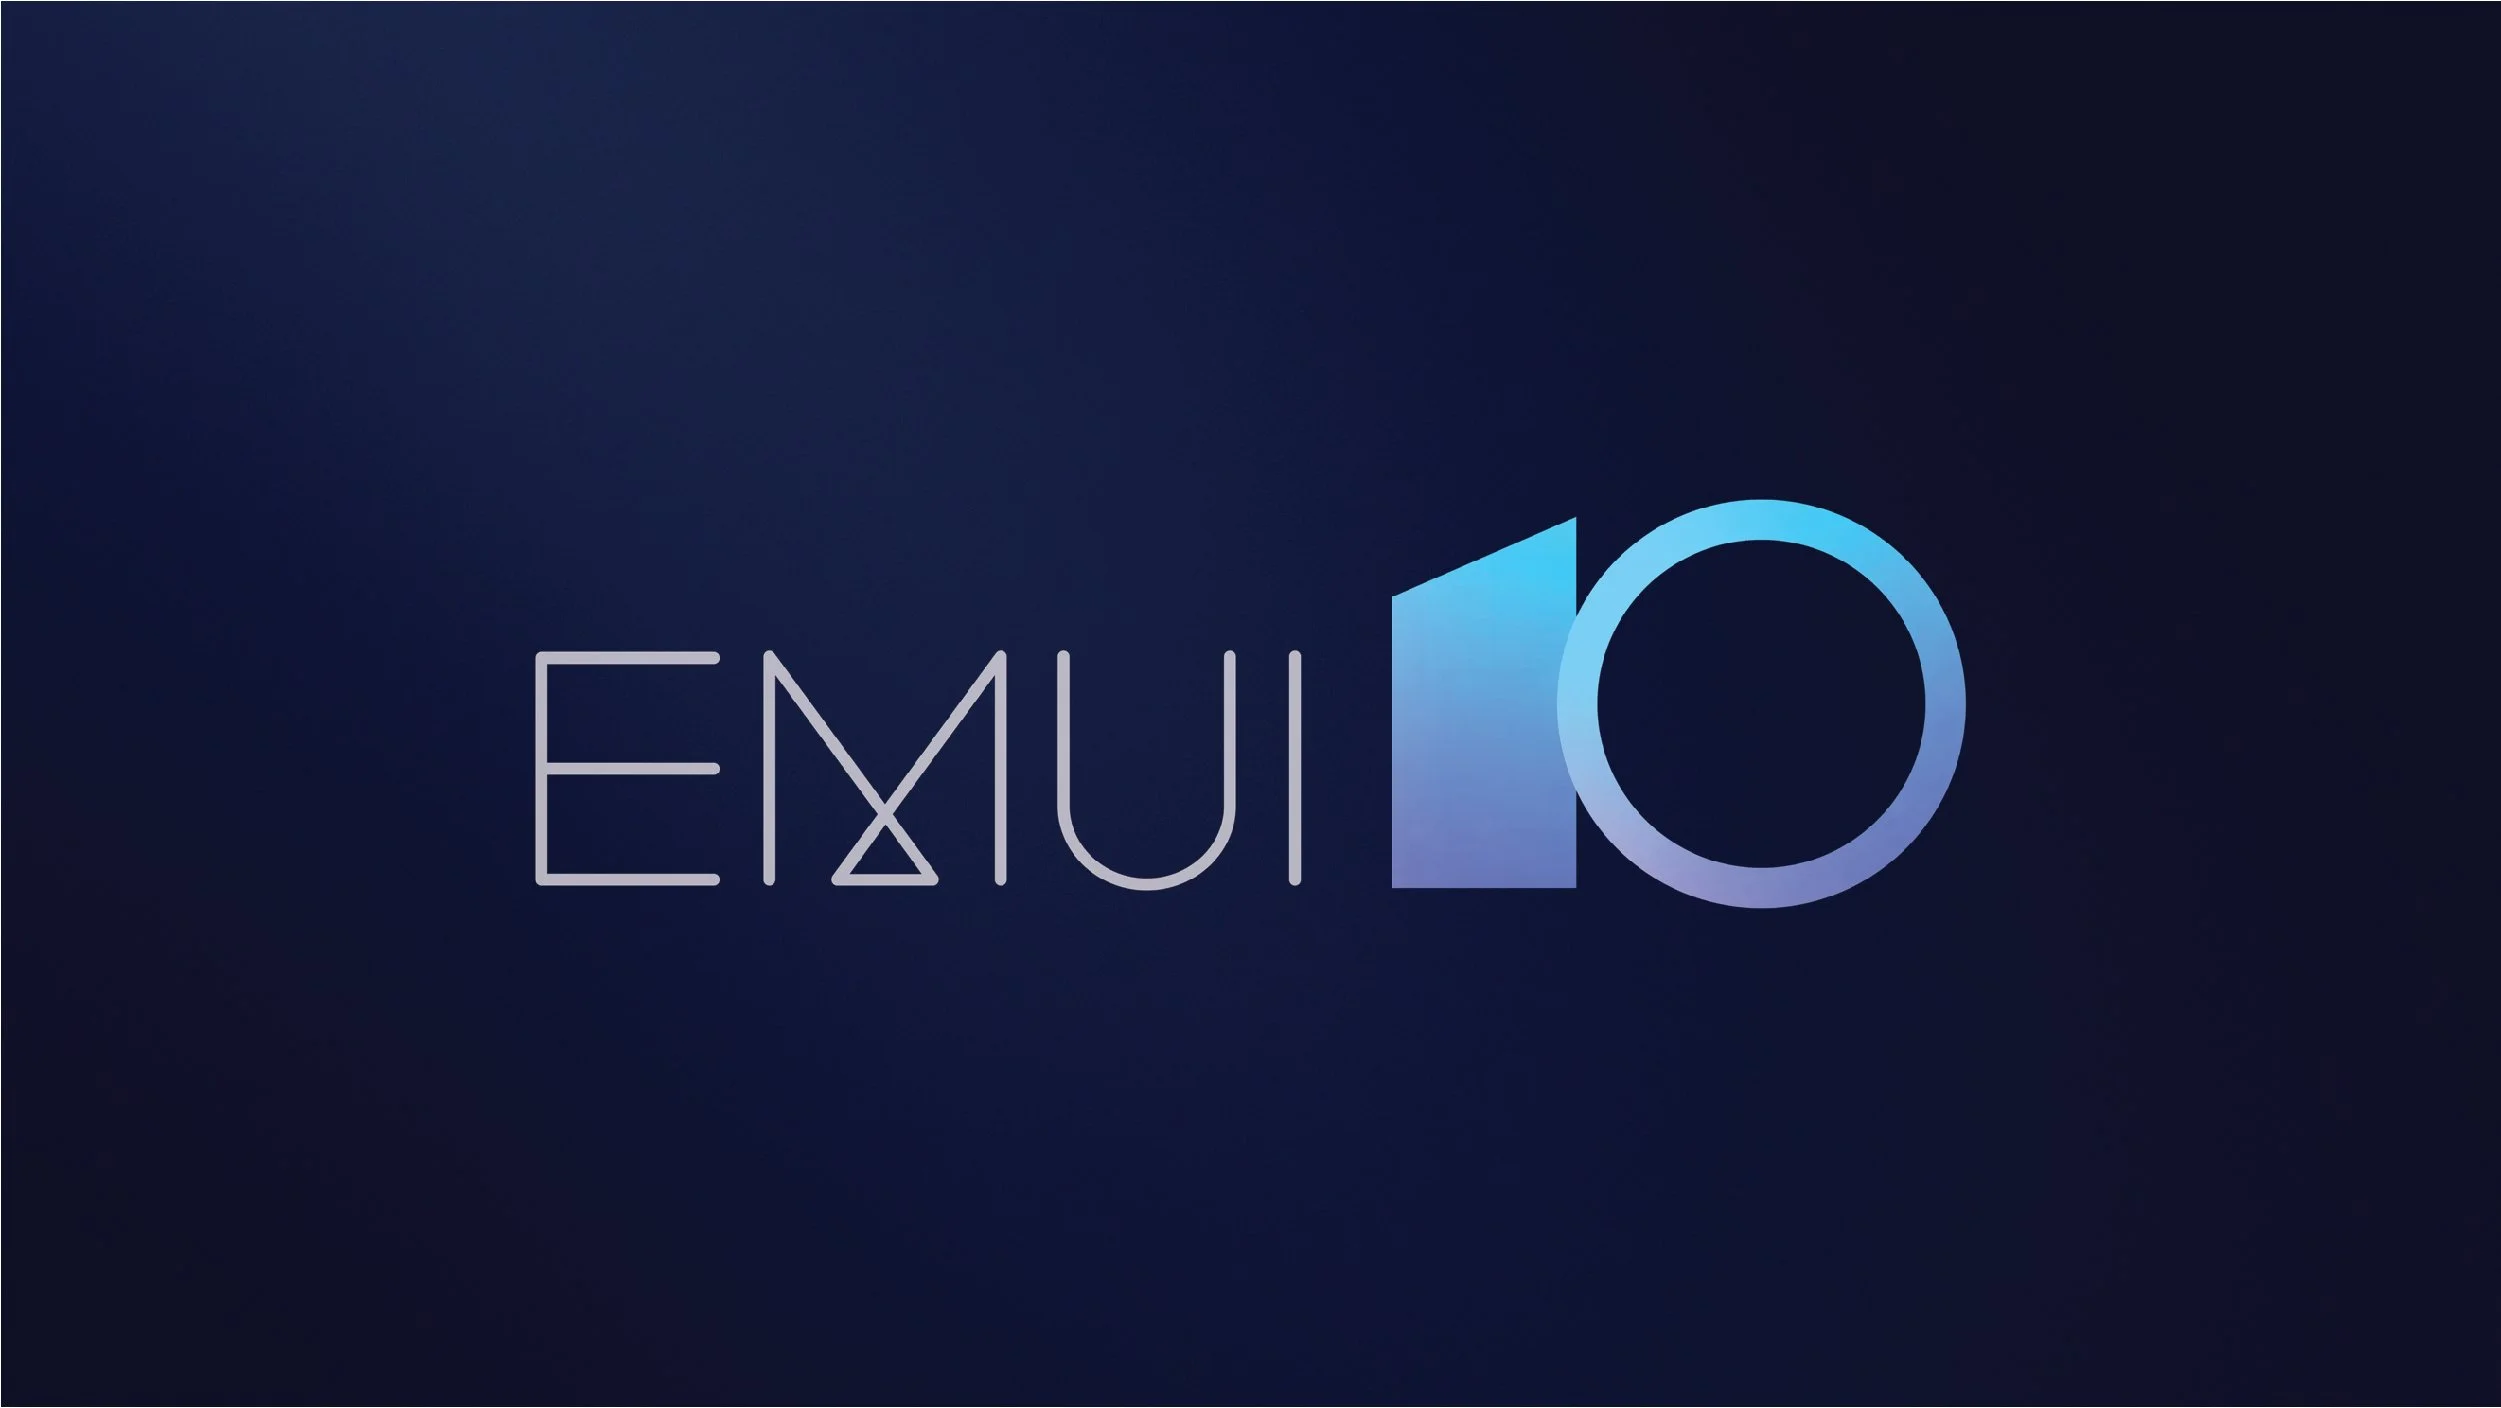 Huawei представила EMUI 10: новый интерфейс, ИИ и совместное управление гаджетами [Обновлено] - фото 1